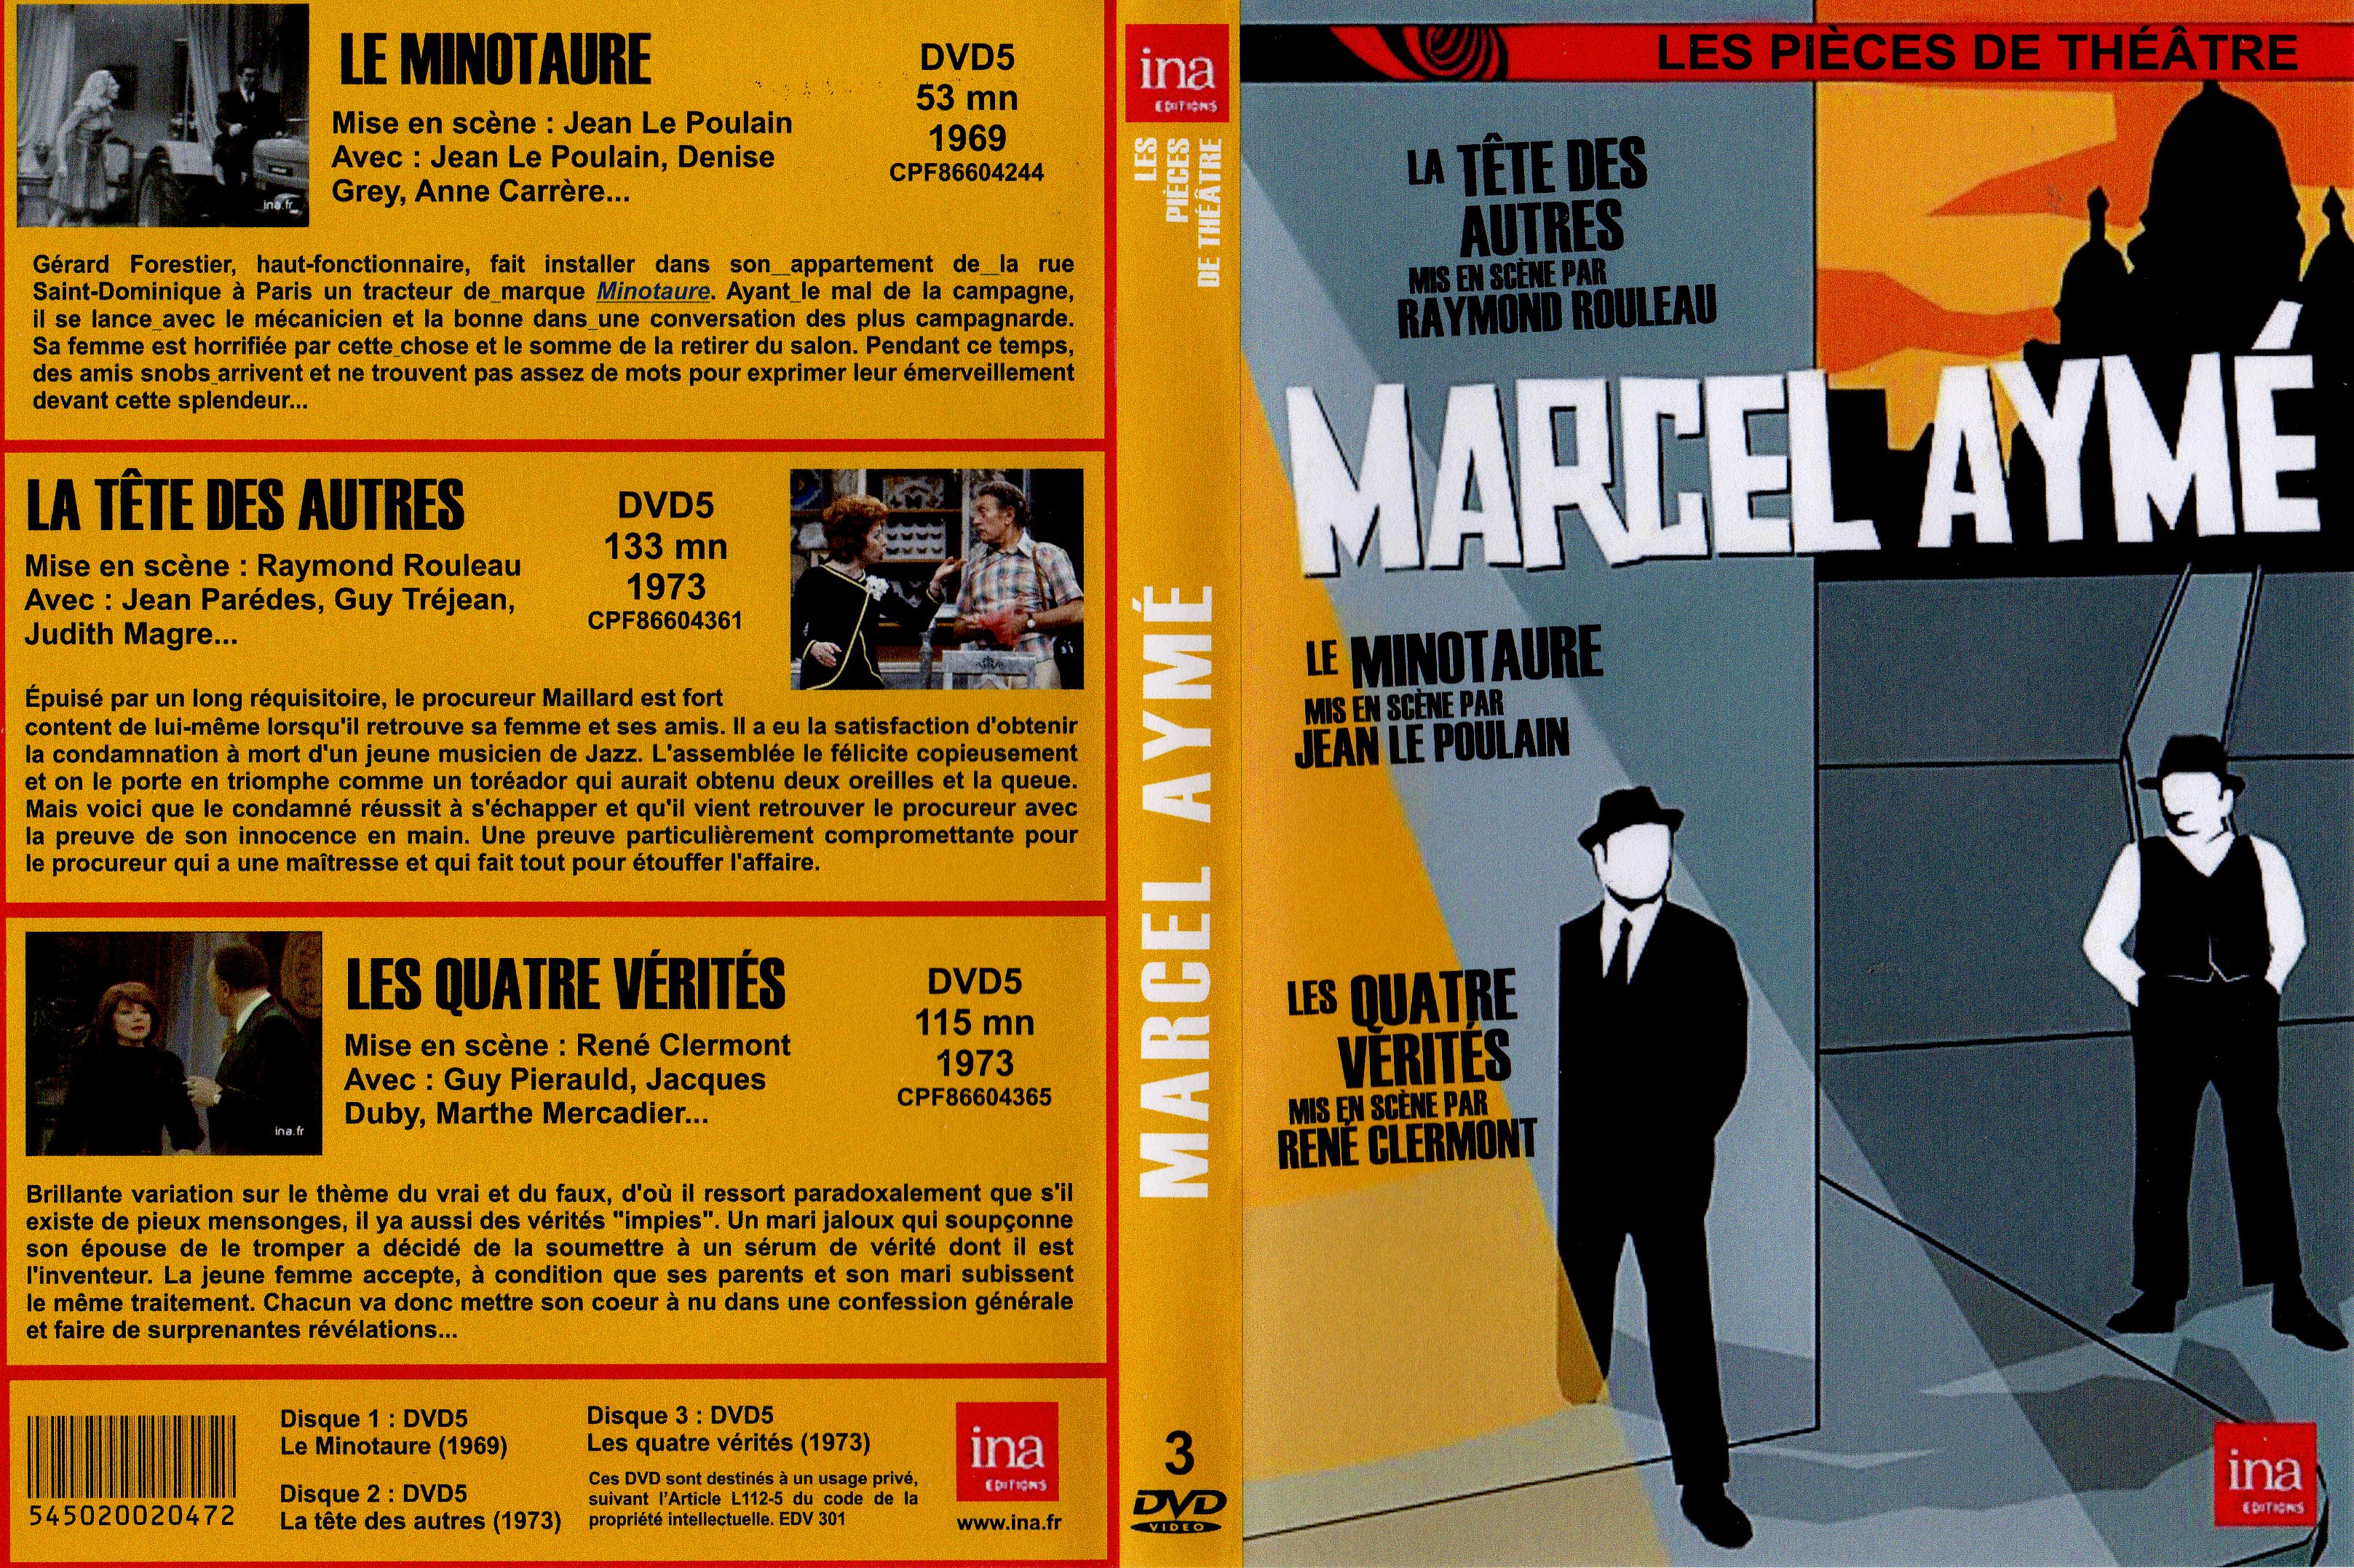 Jaquette DVD Marcel Ayme 3 pices de theatre custom